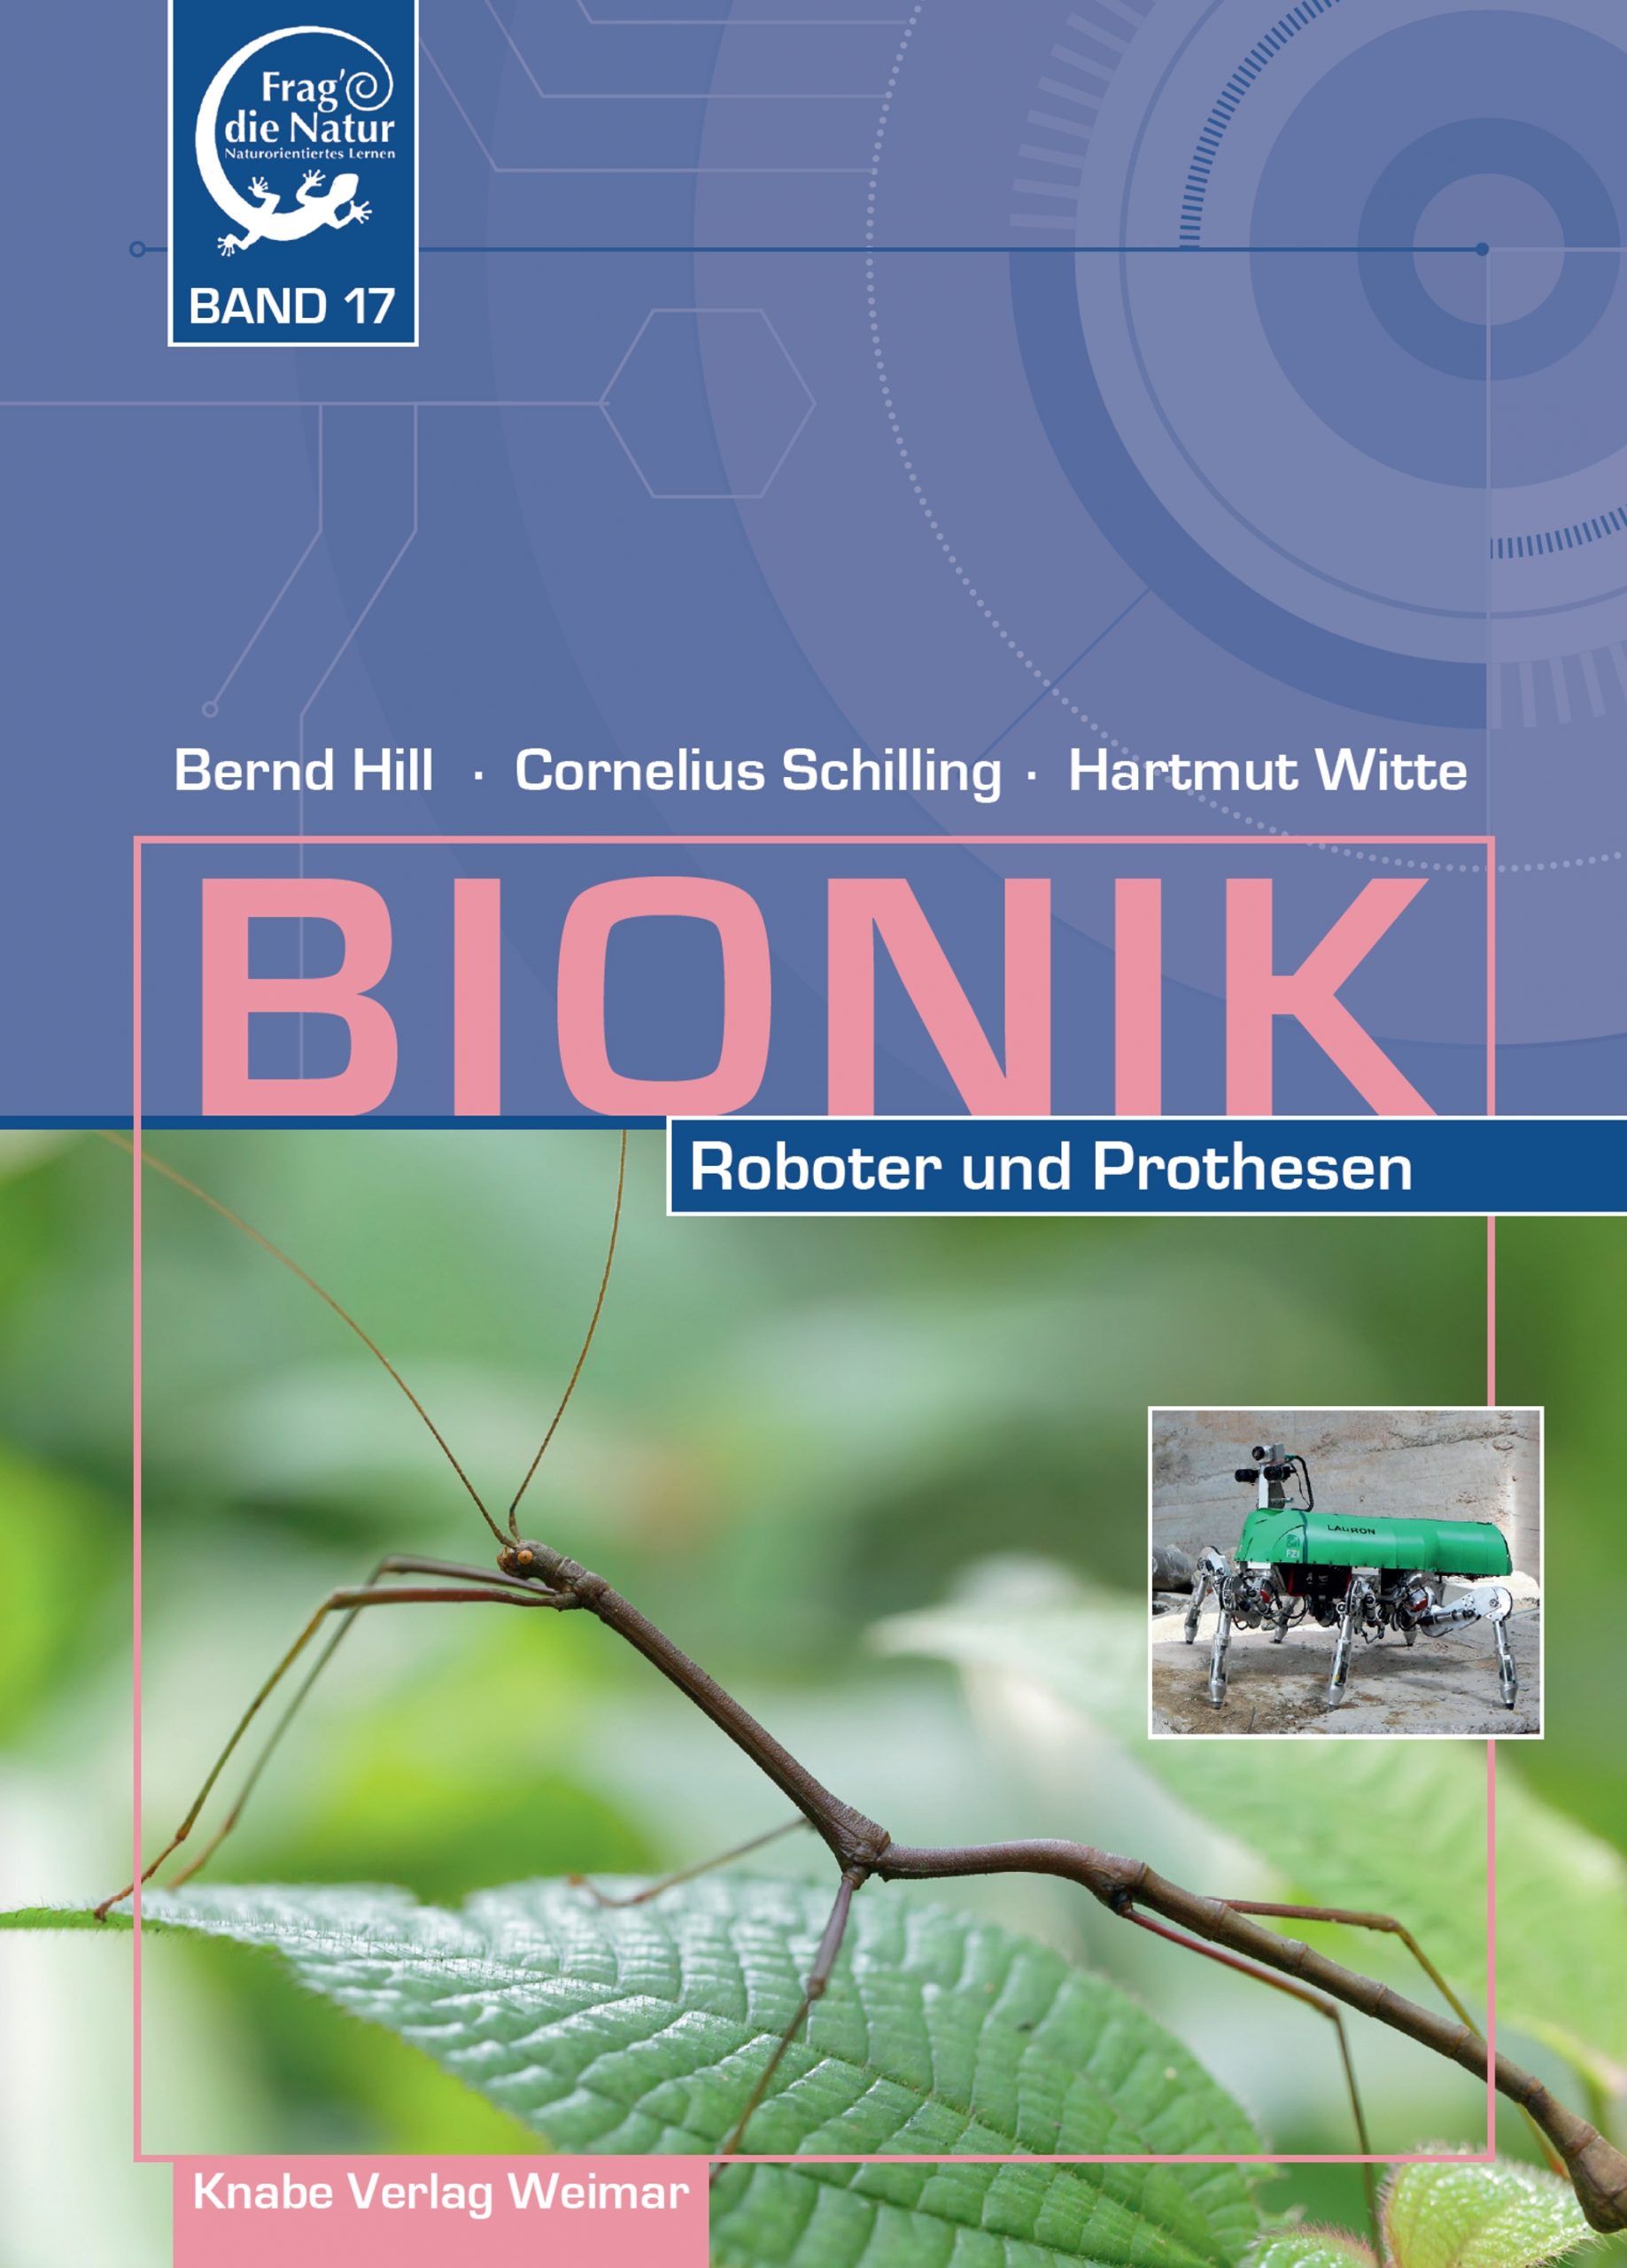 Bionik XVII. Roboter und Prothesen